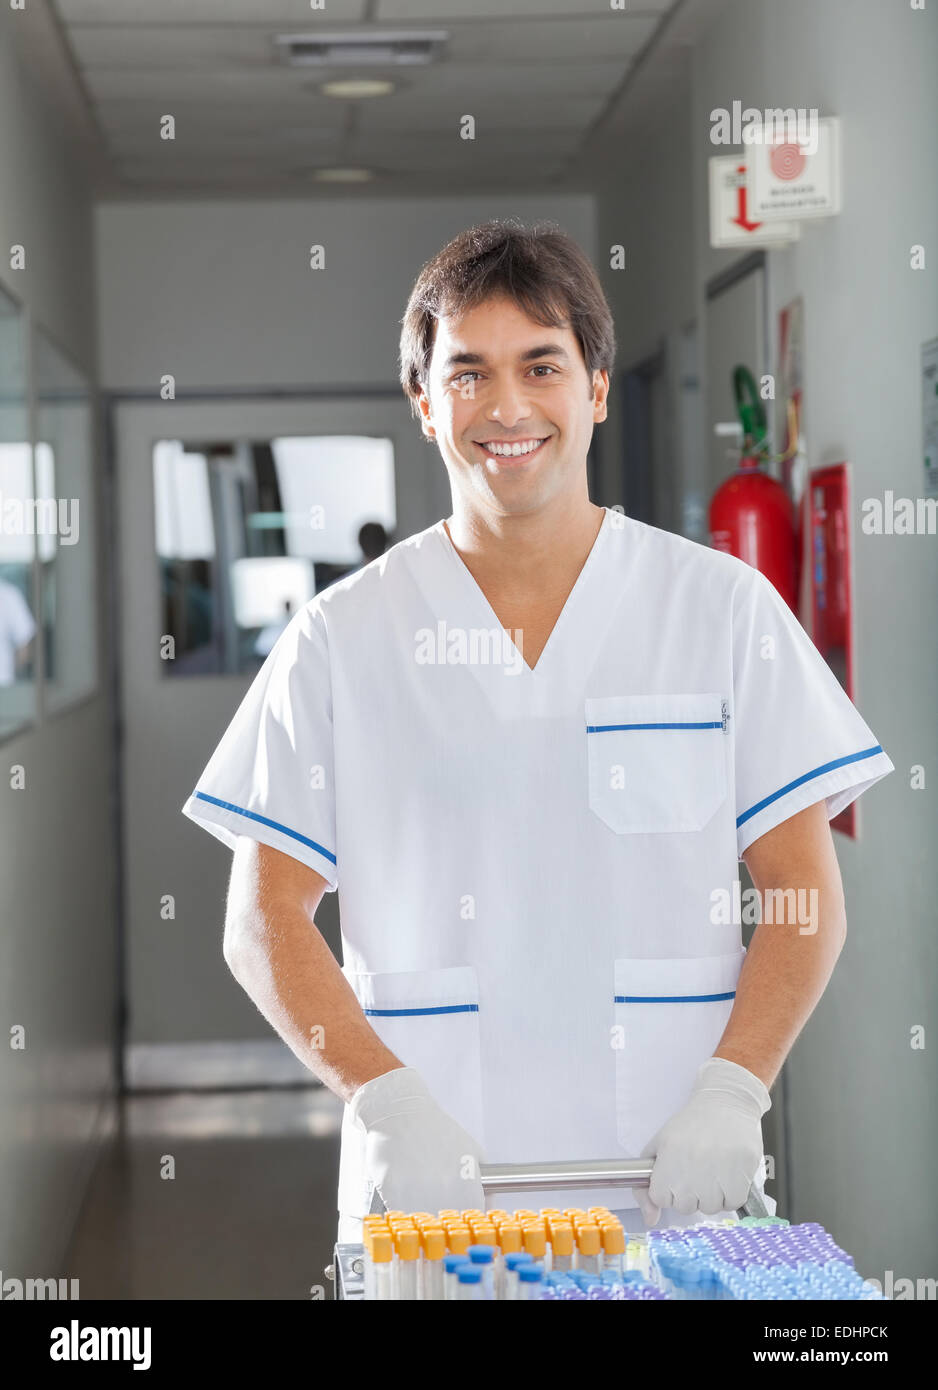 Poussant technicien medical cart in hospital hallway Banque D'Images